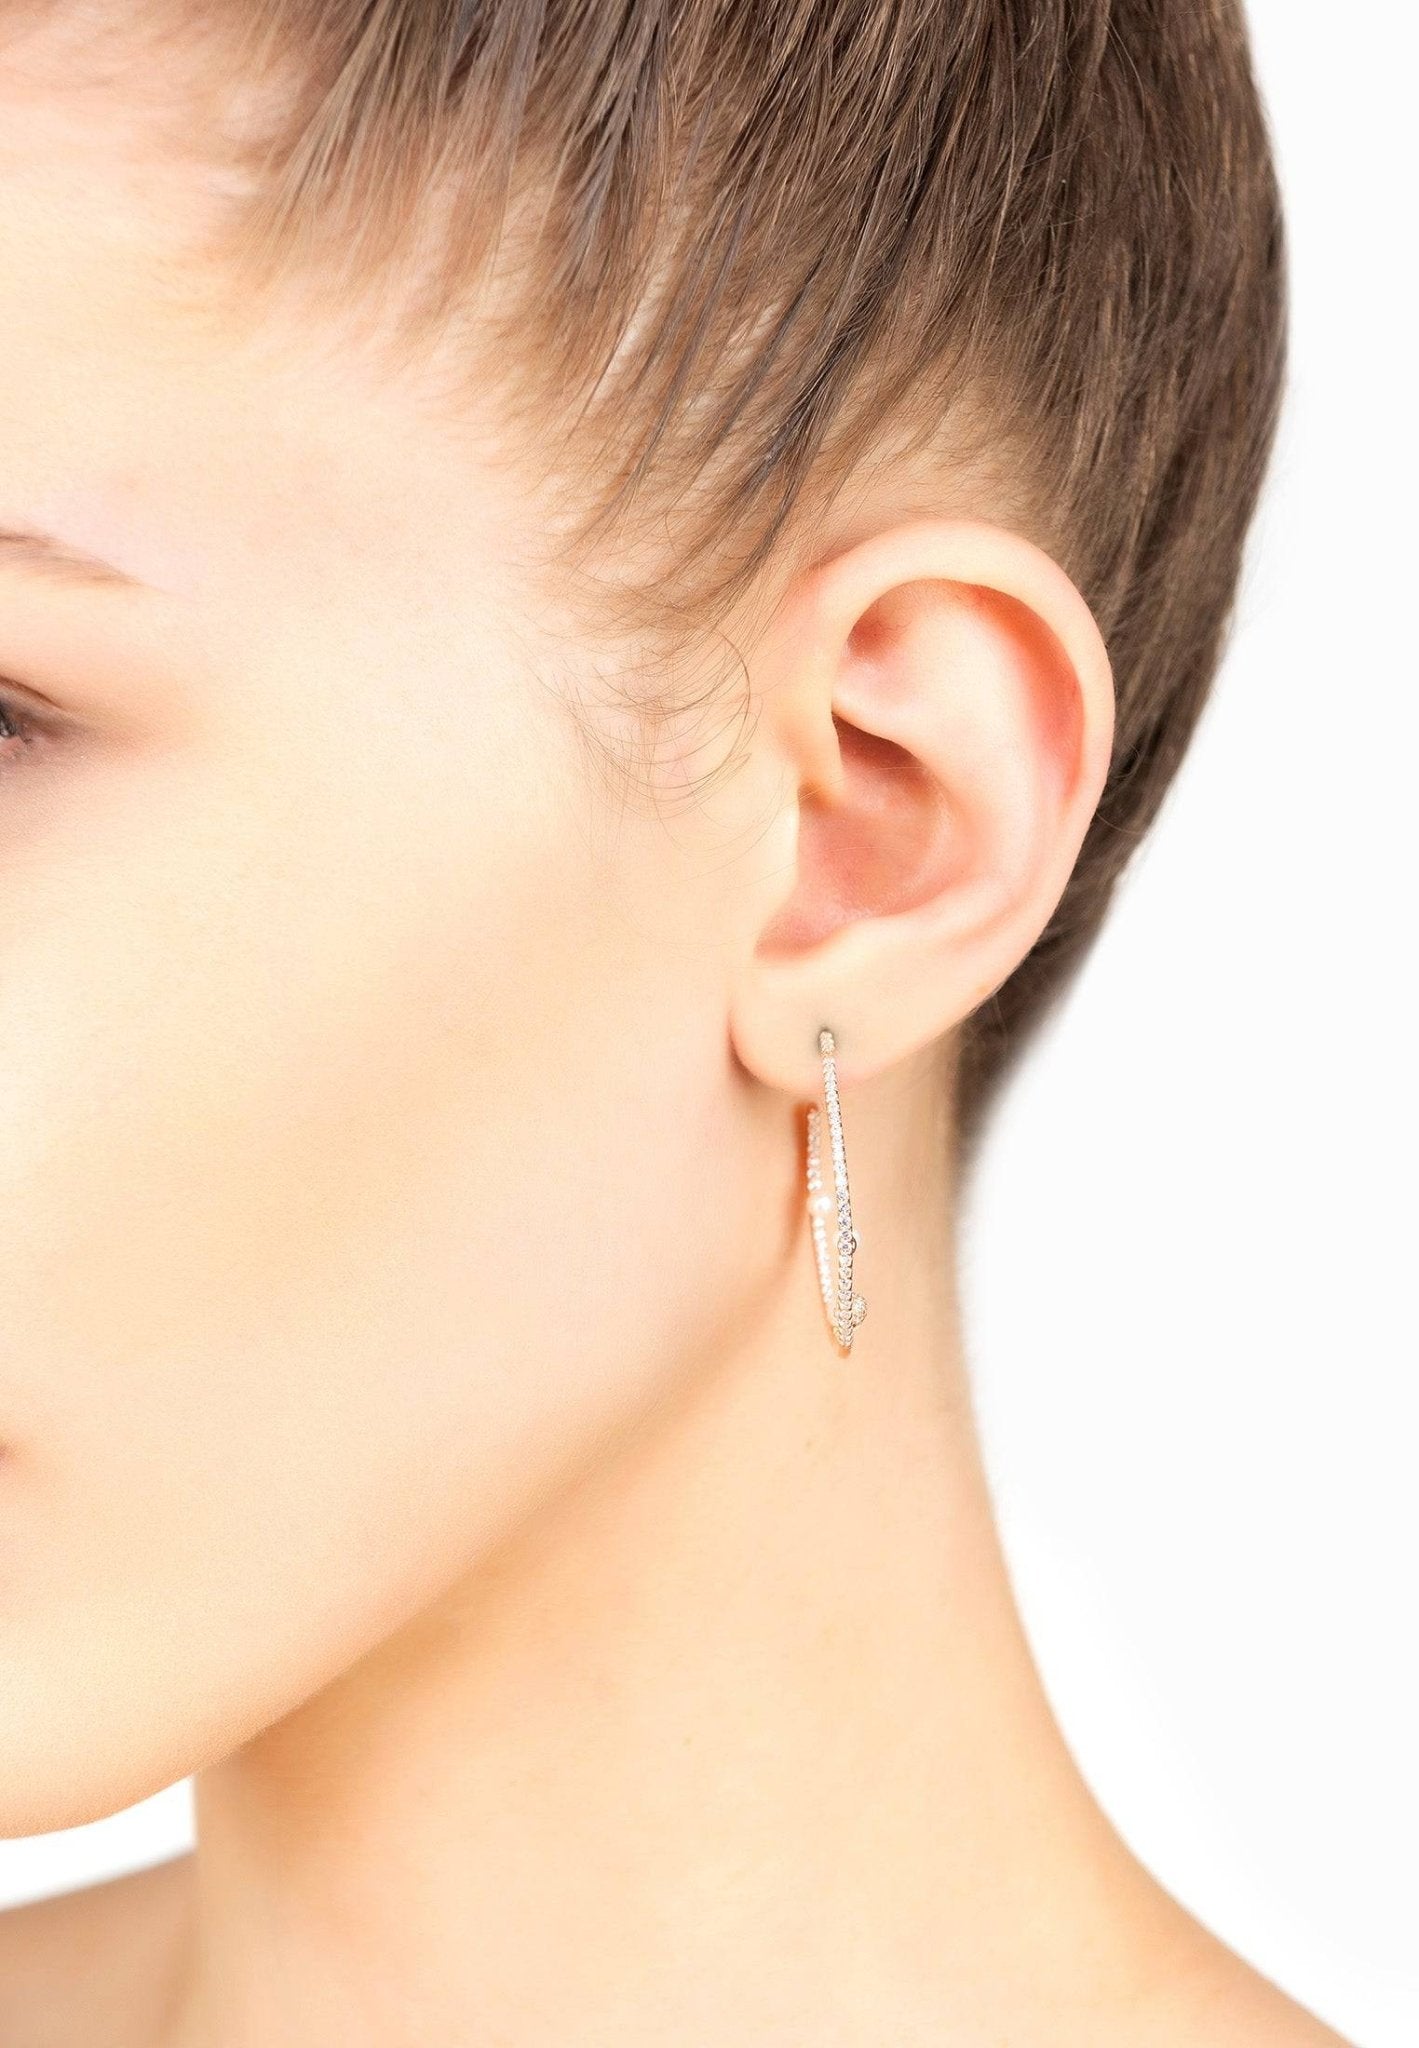 Pearl & Sparkles Hoop Earrings Silver - LATELITA Earrings